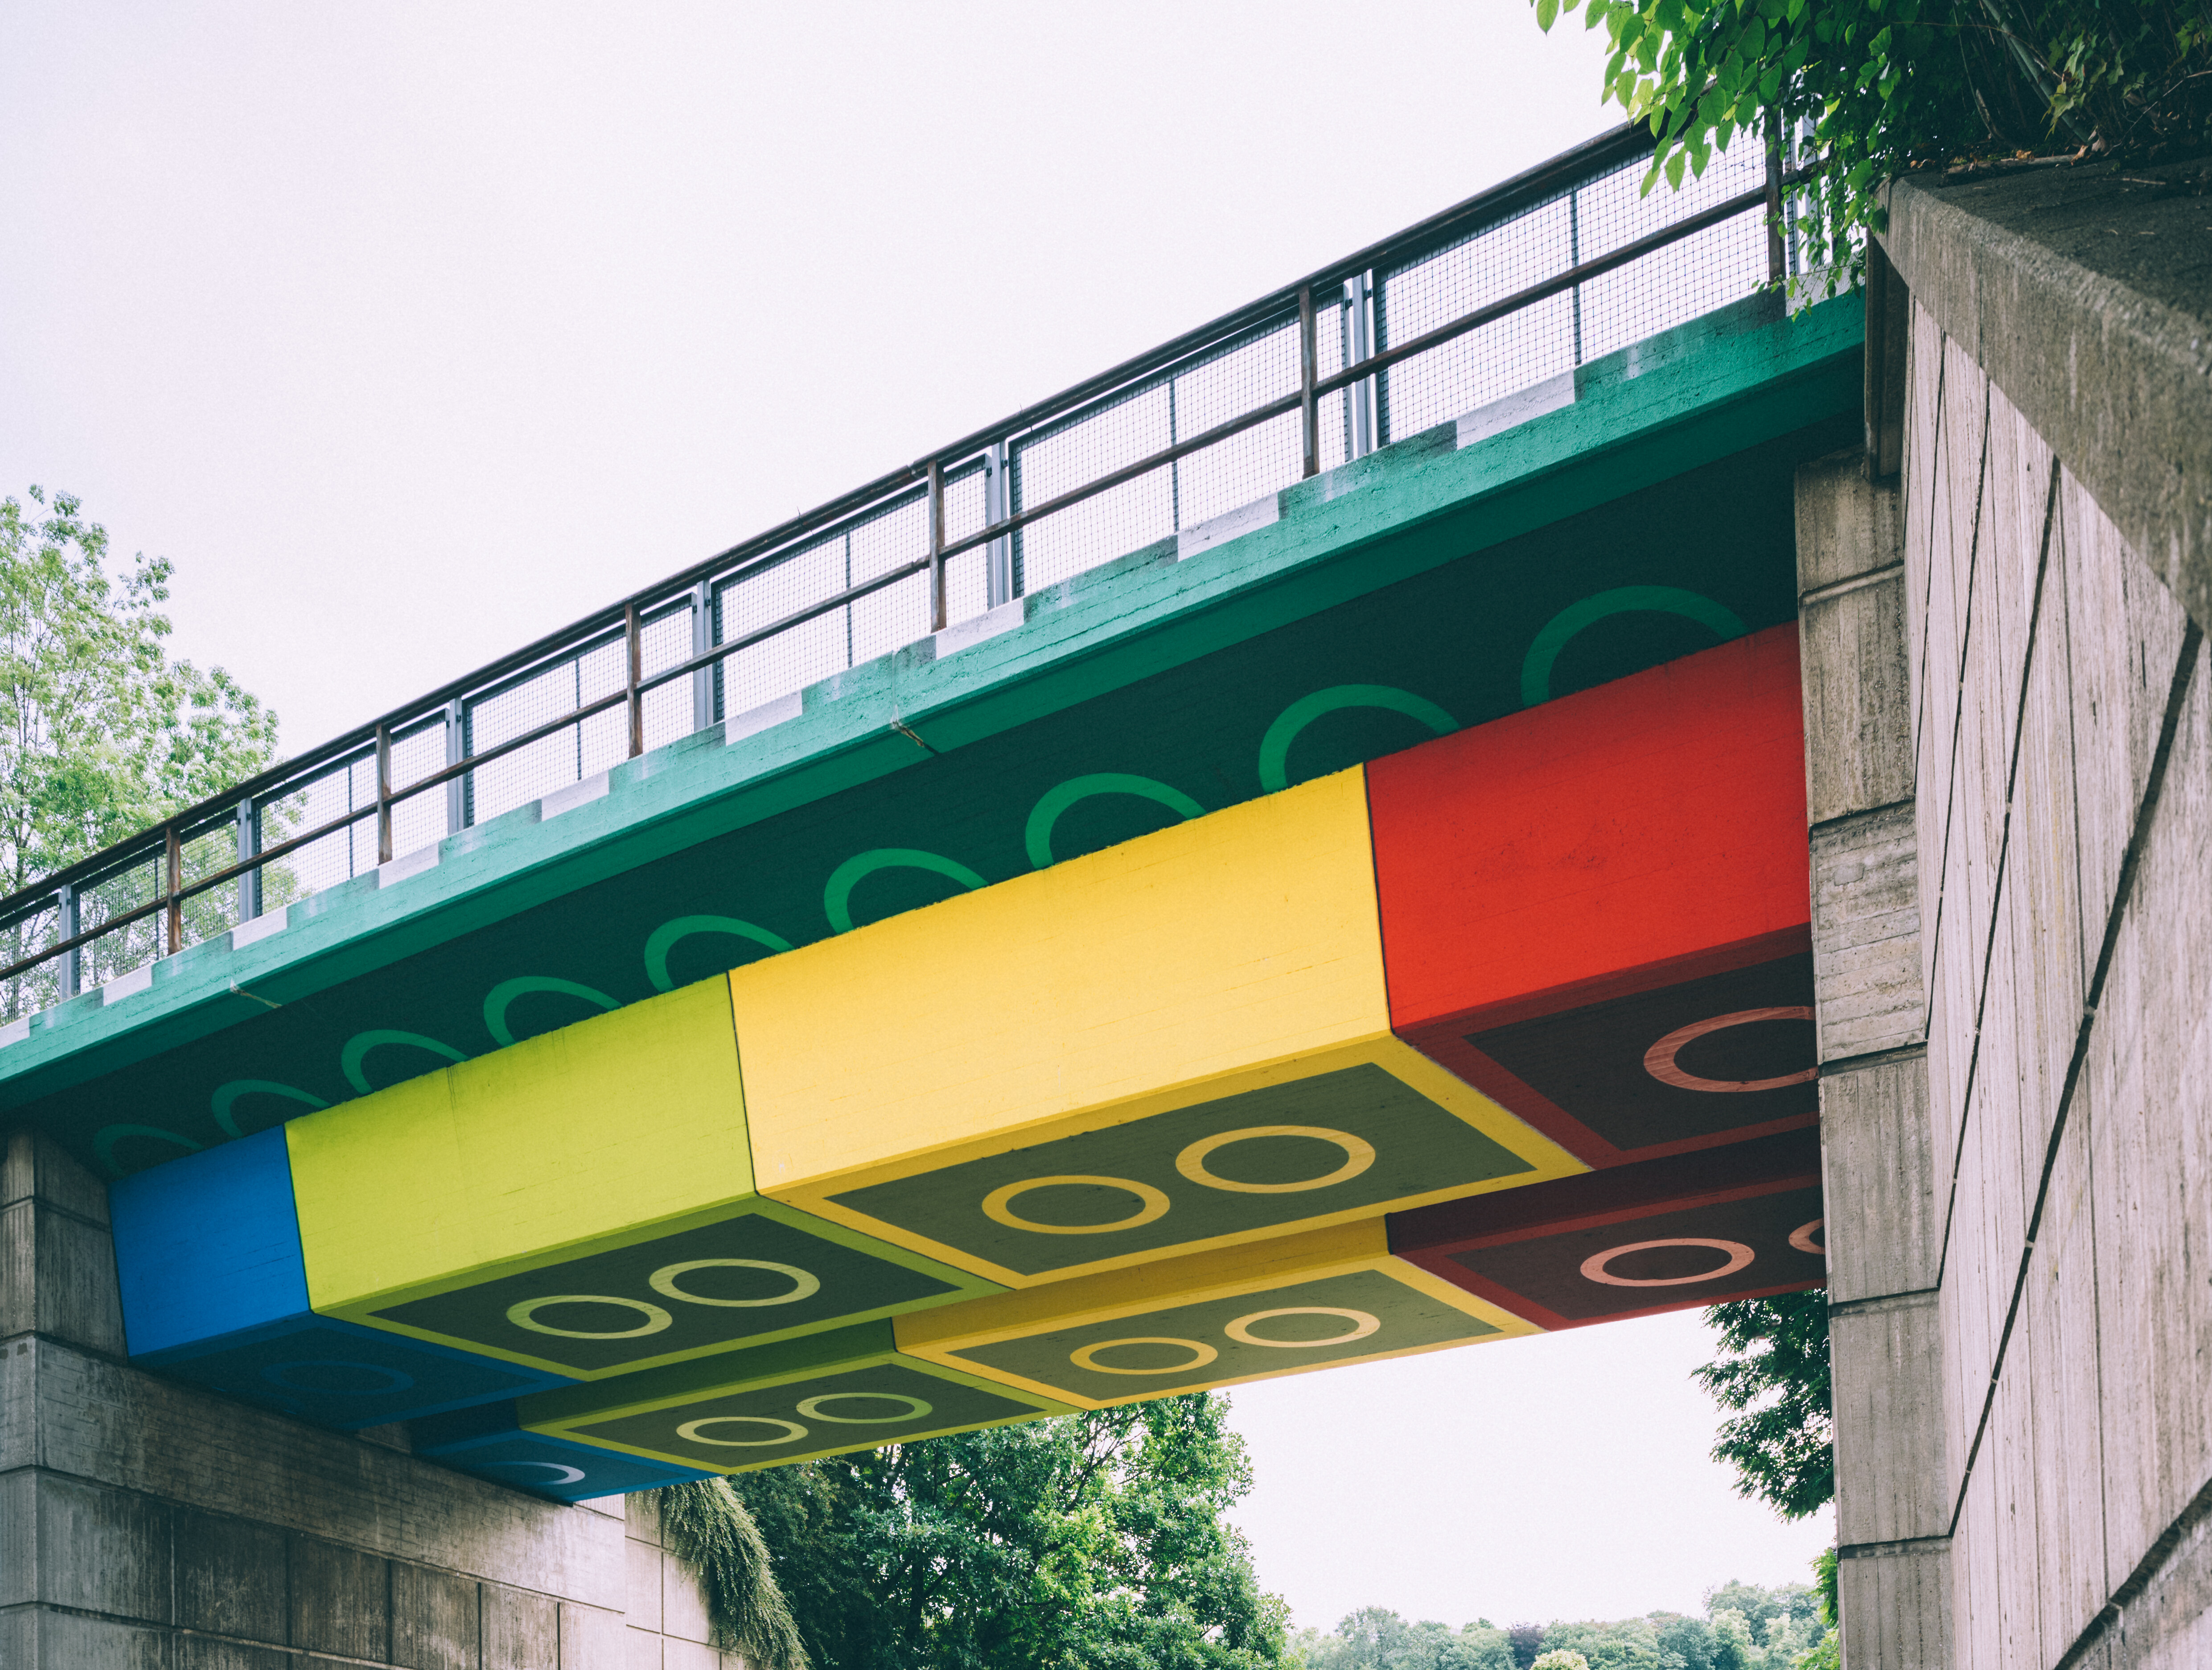 Die "Legobrücke" in Wuppertal, vom Künstler Martin Heuwold bemalt in Form von überdimensionalen Legosteinen. © Tourismus NRW e.V./Johannes Höhn